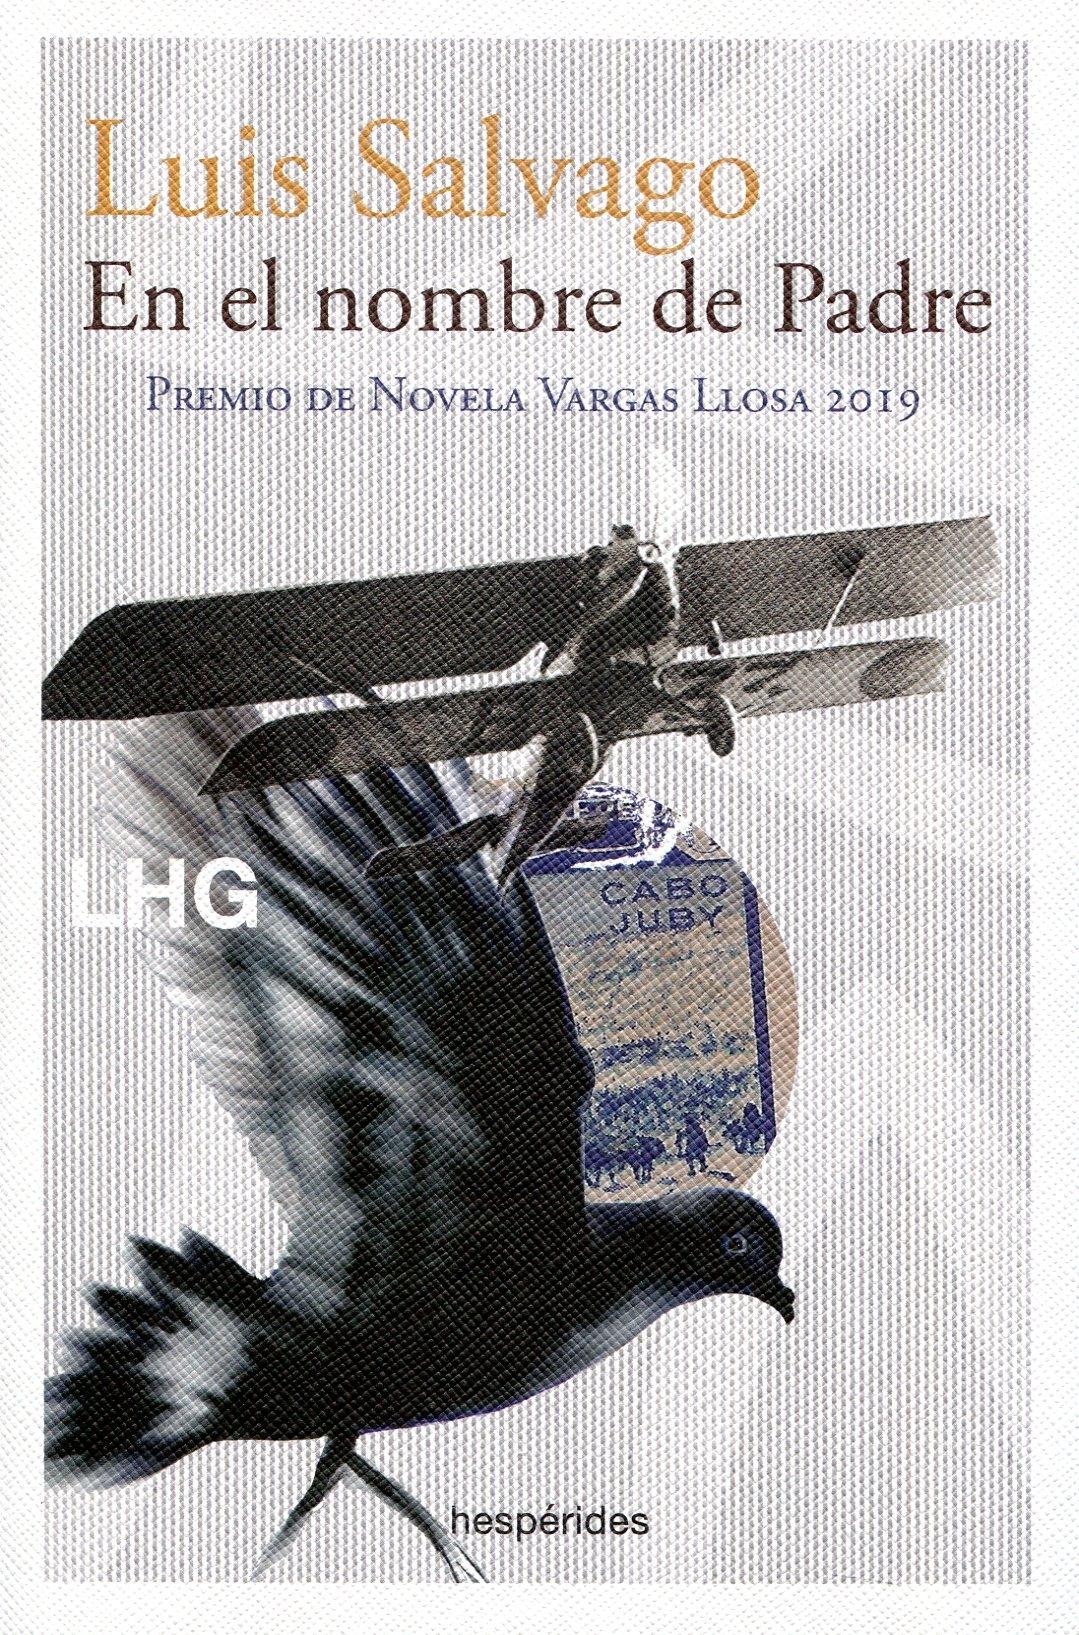 En el Nombre de Padre "Premio de Novela Vargas Llosa 2019". 